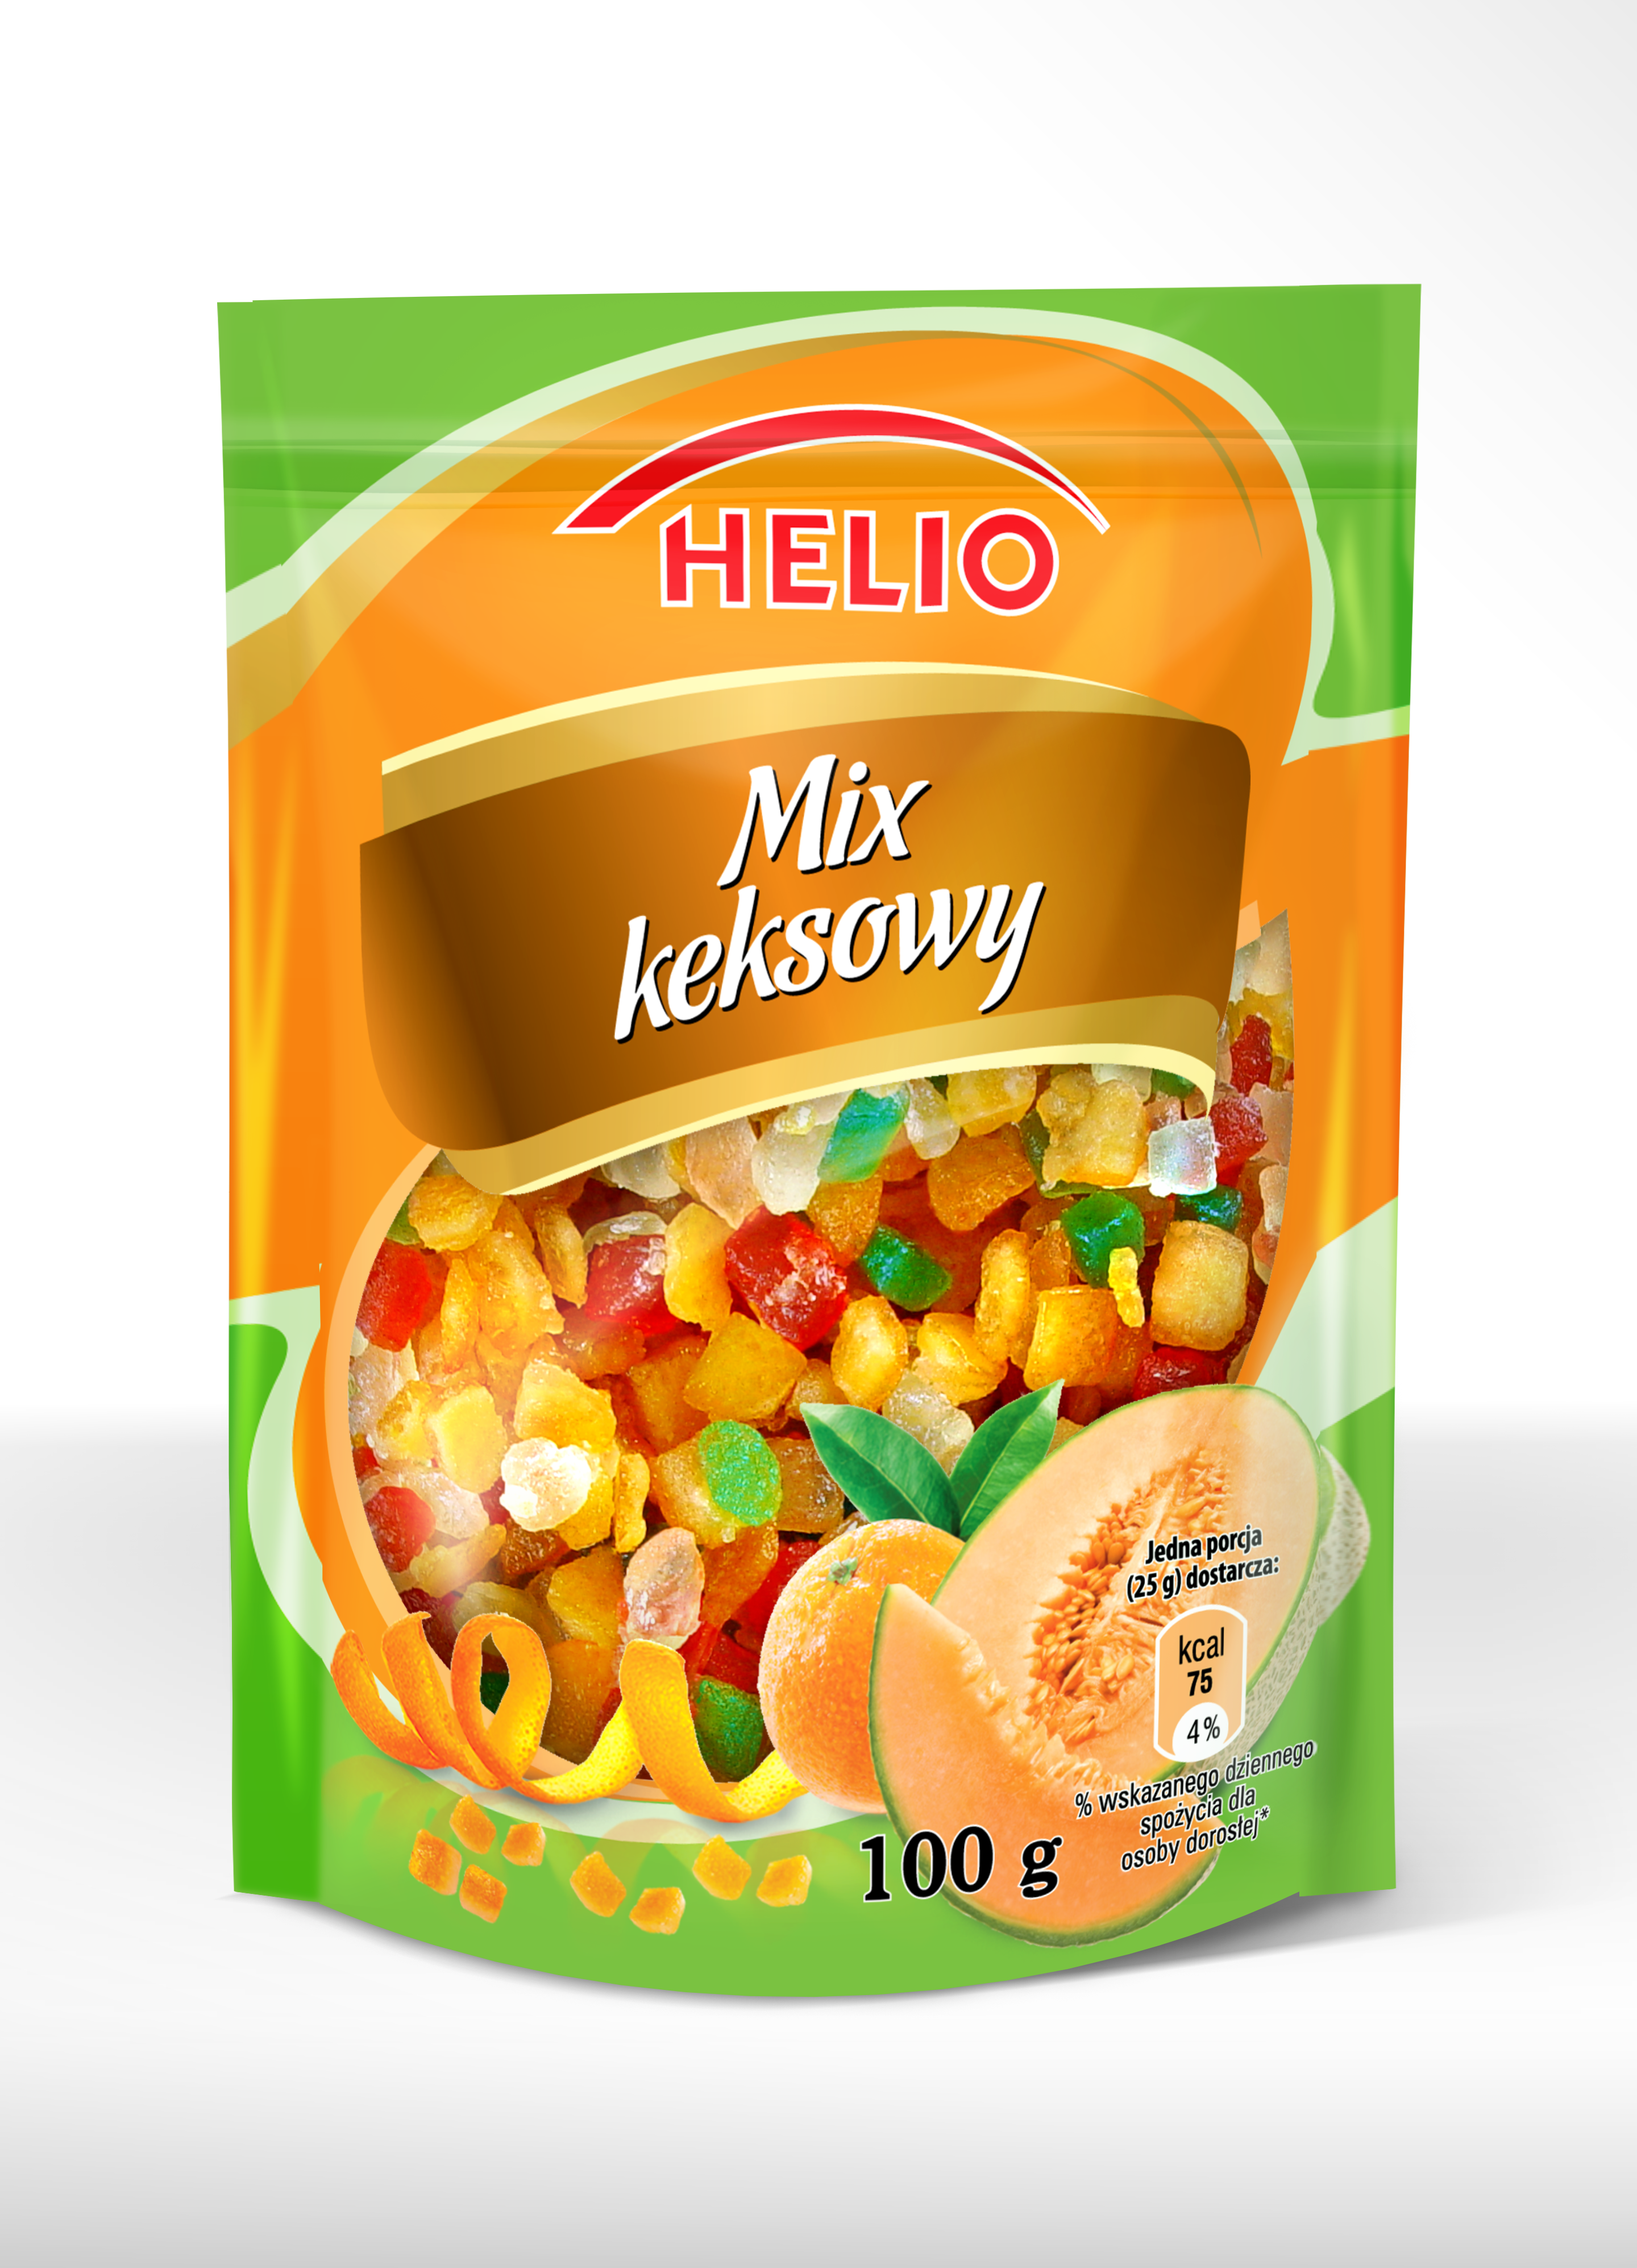 Helio Mix Keksowy 100 g